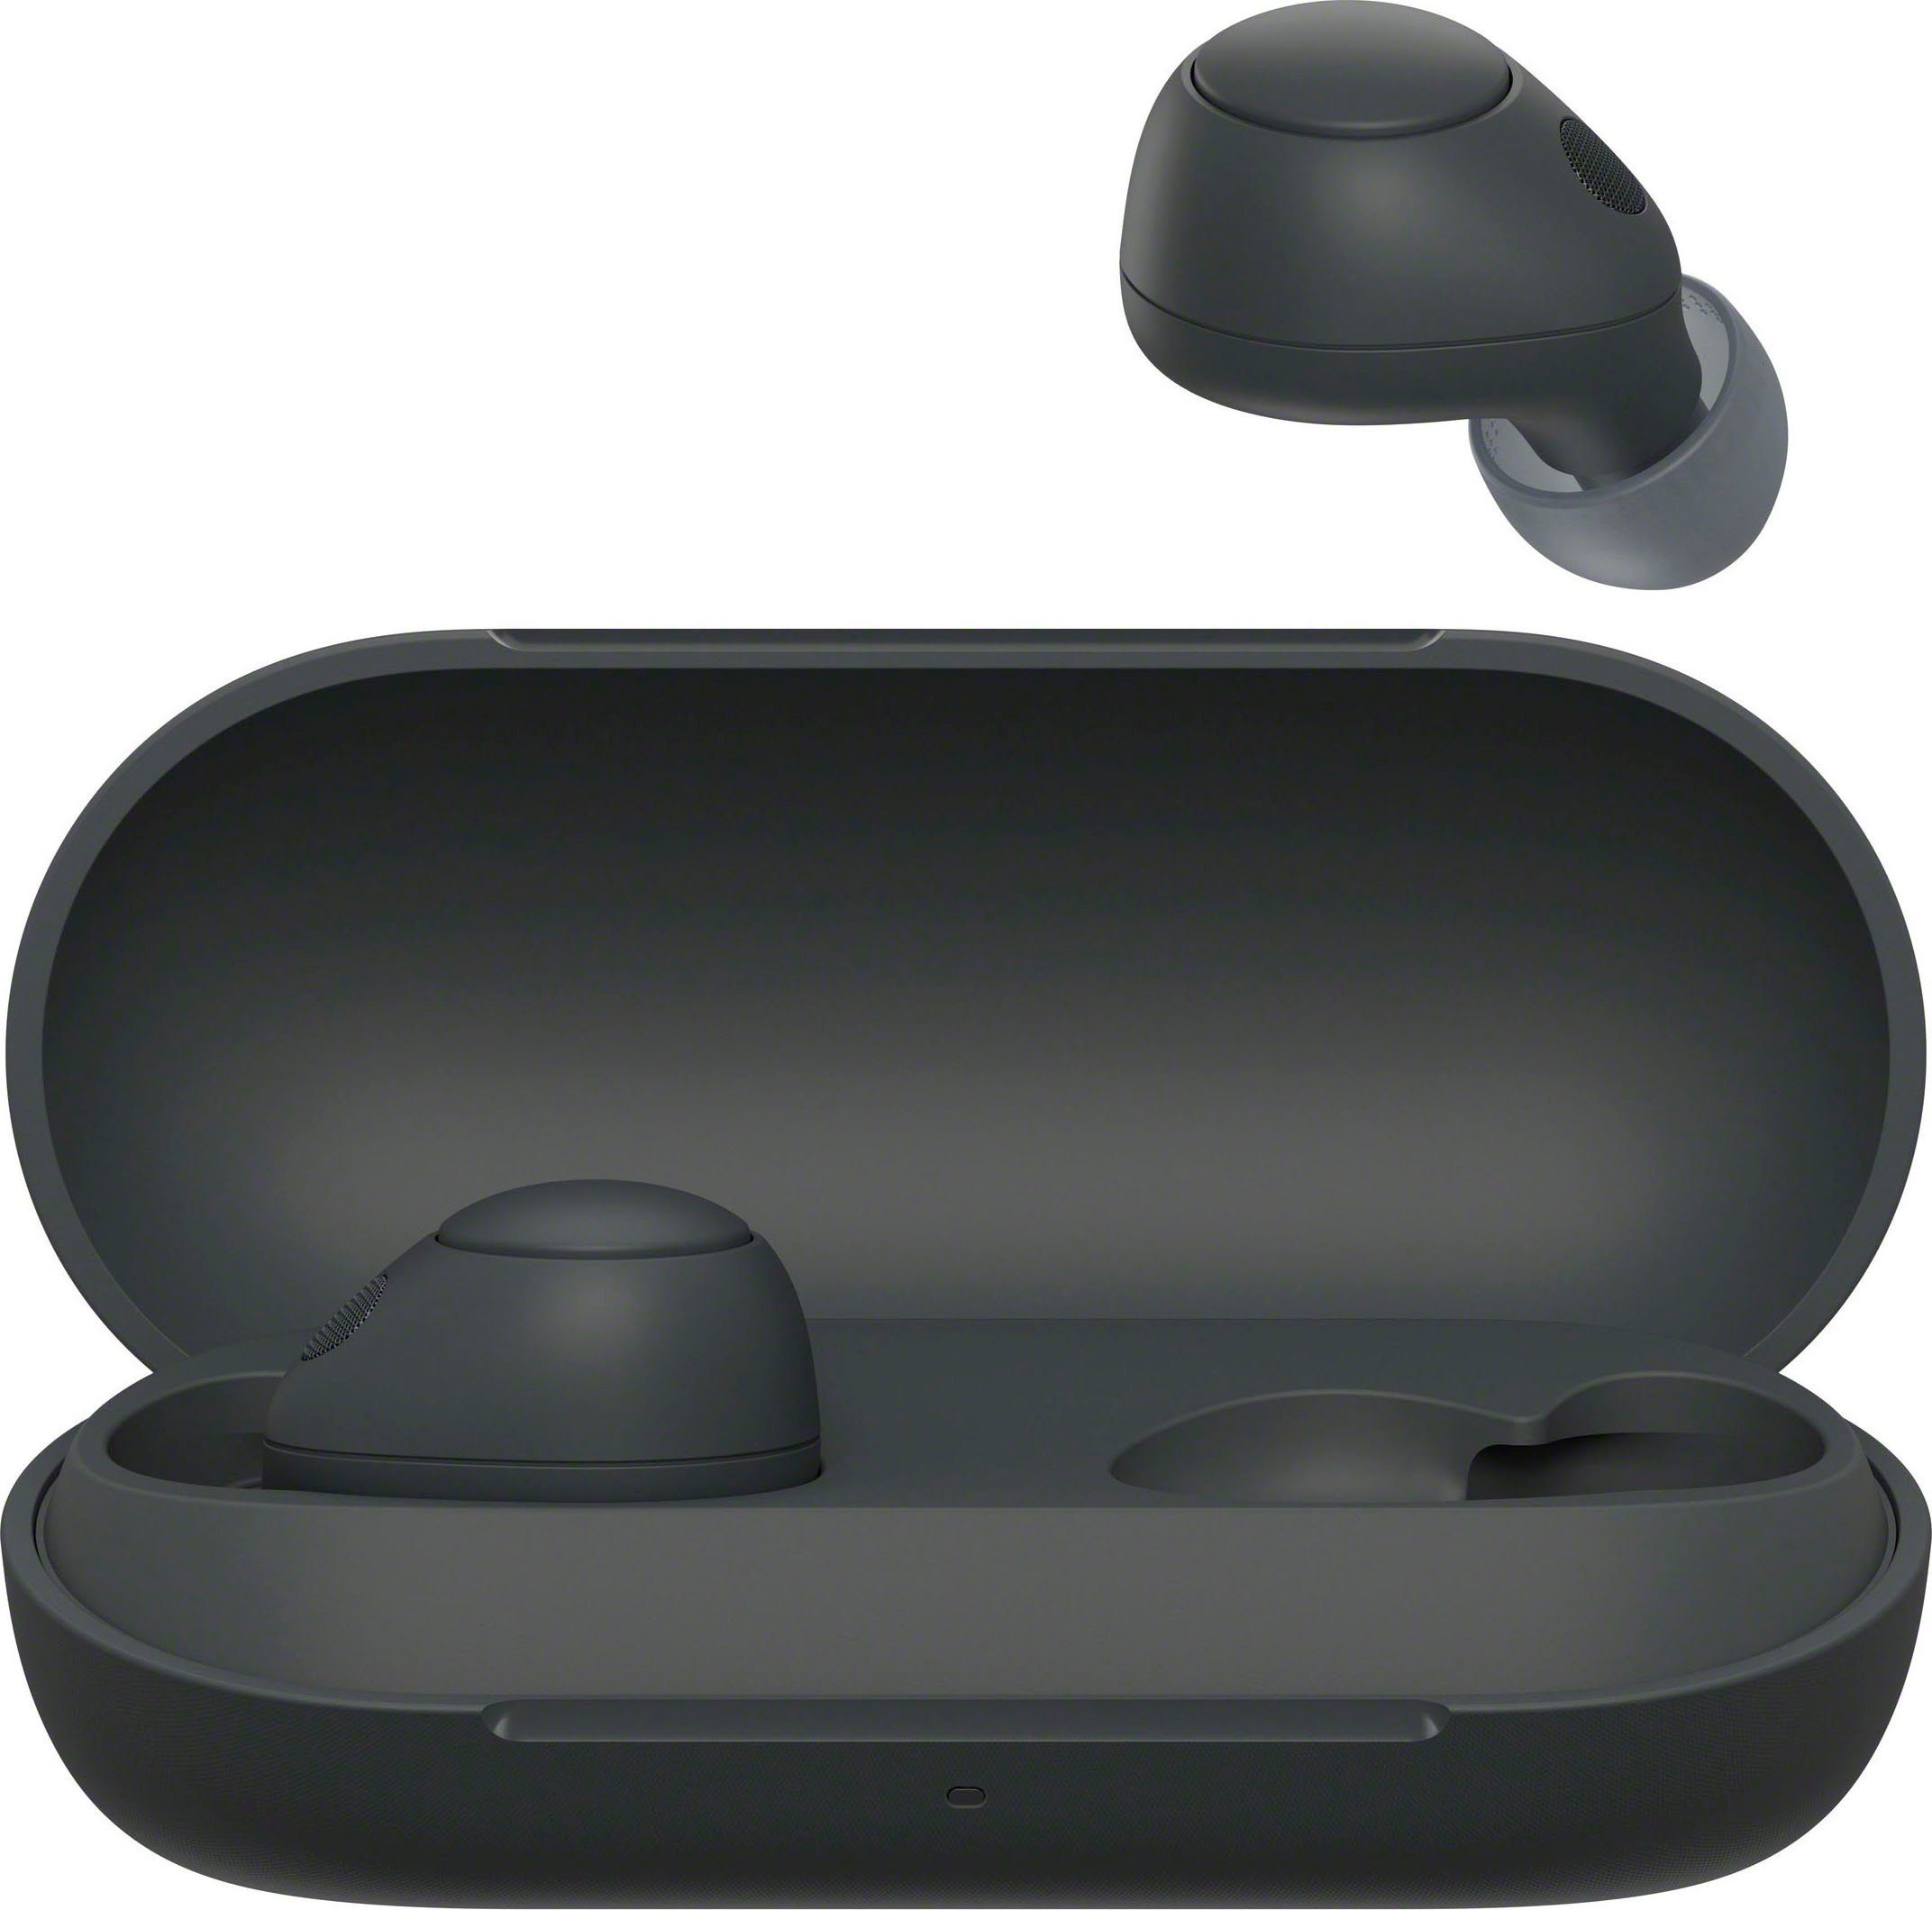 Multipoint (Noise-Cancelling, Akkulaufzeit, Connection) Bluetooth, Std. 20 In-Ear-Kopfhörer bis WF-C700N Gojischwarz Sony